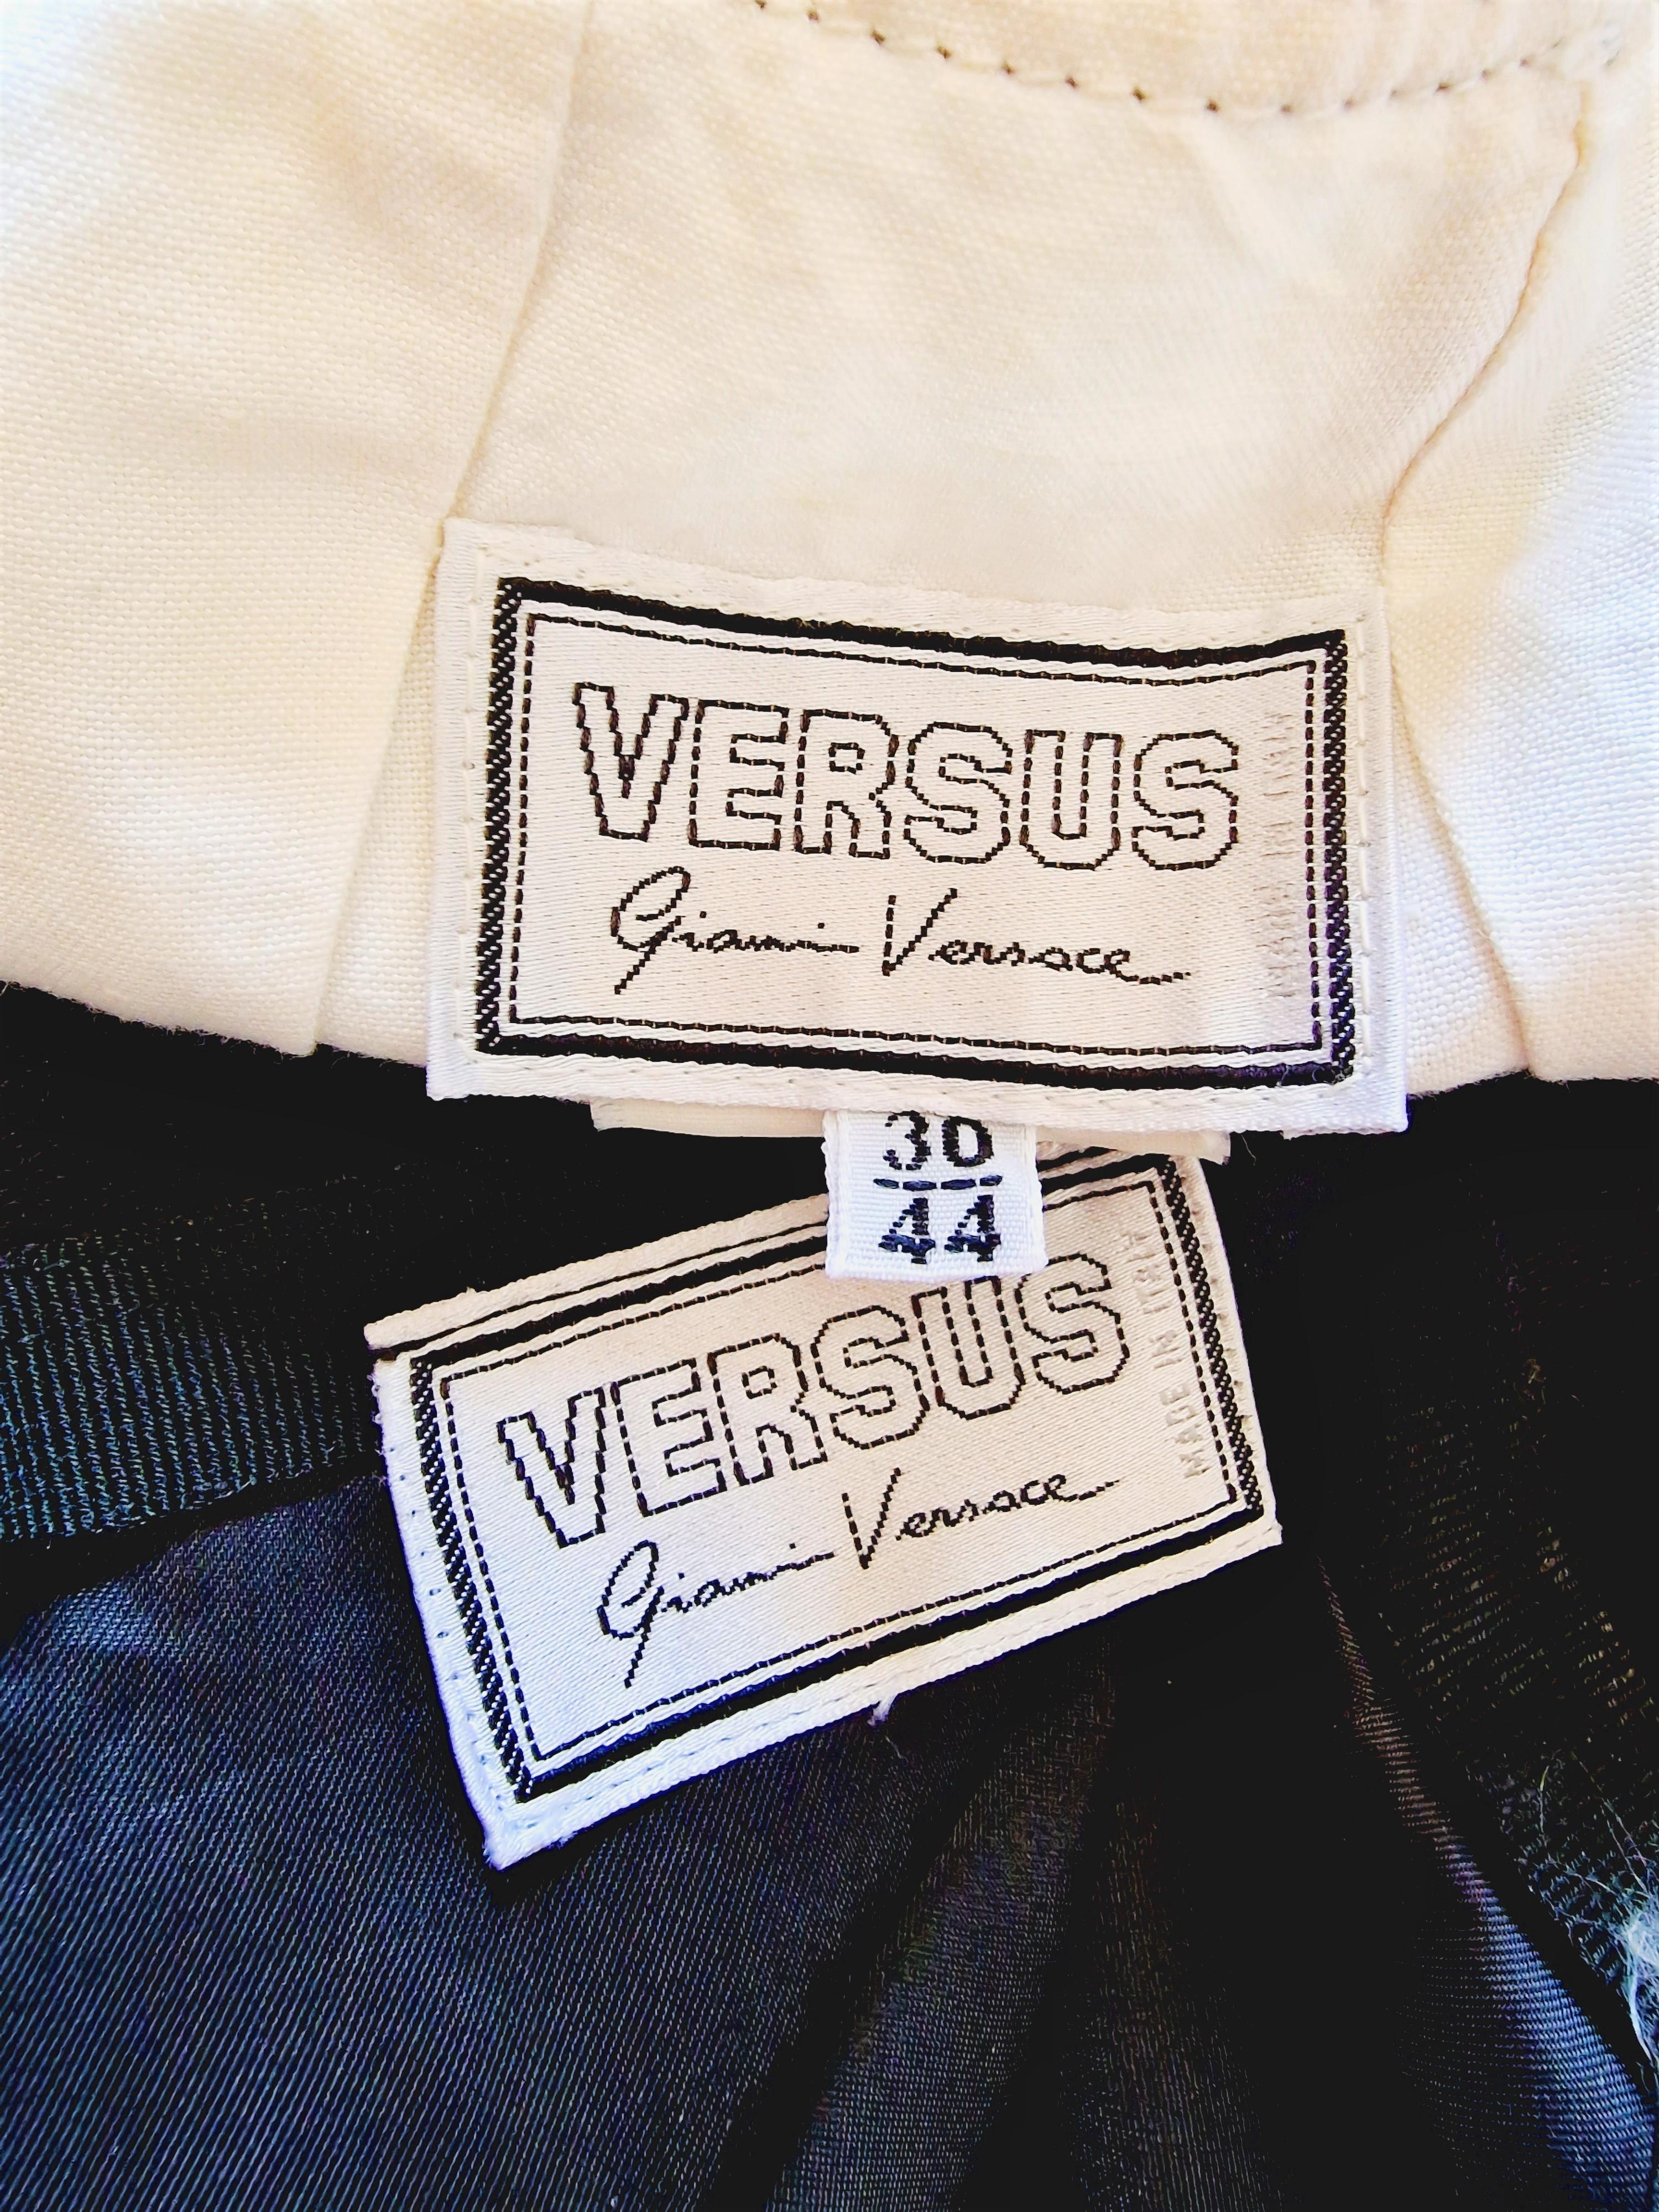 Gianni Versace Versus Straps S&M FW 1992 Bondage Vintage Ensemble haut-robe soutien-gorge en vente 8